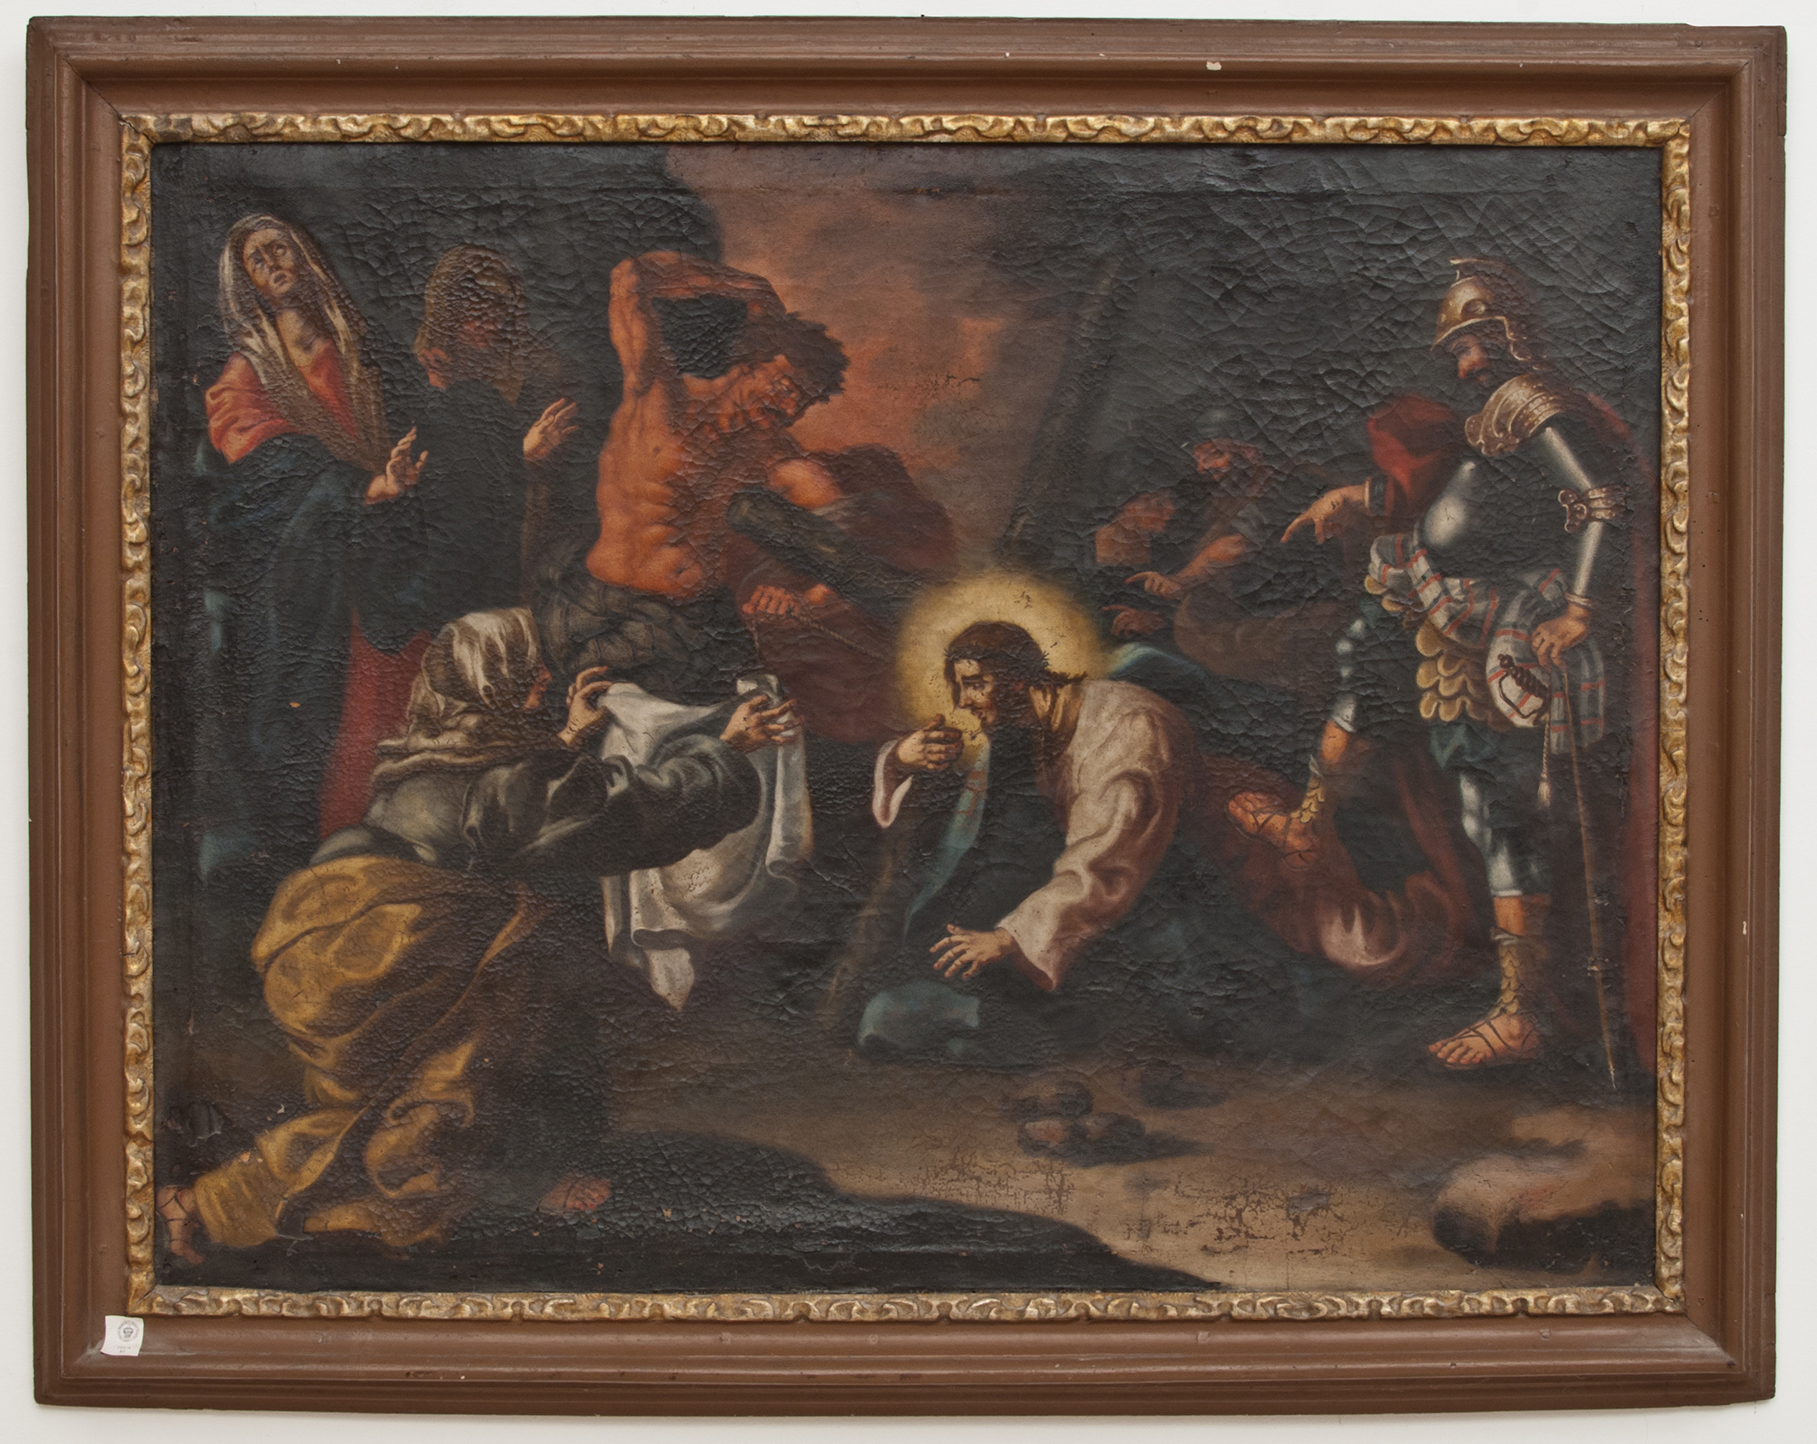 GESU’ ASCIUGATO DALLA VERONICA (dipinto - dipinto su tela, opera isolata) di Ignoto (maniera) - ambito Italia meridionale (XVIII)